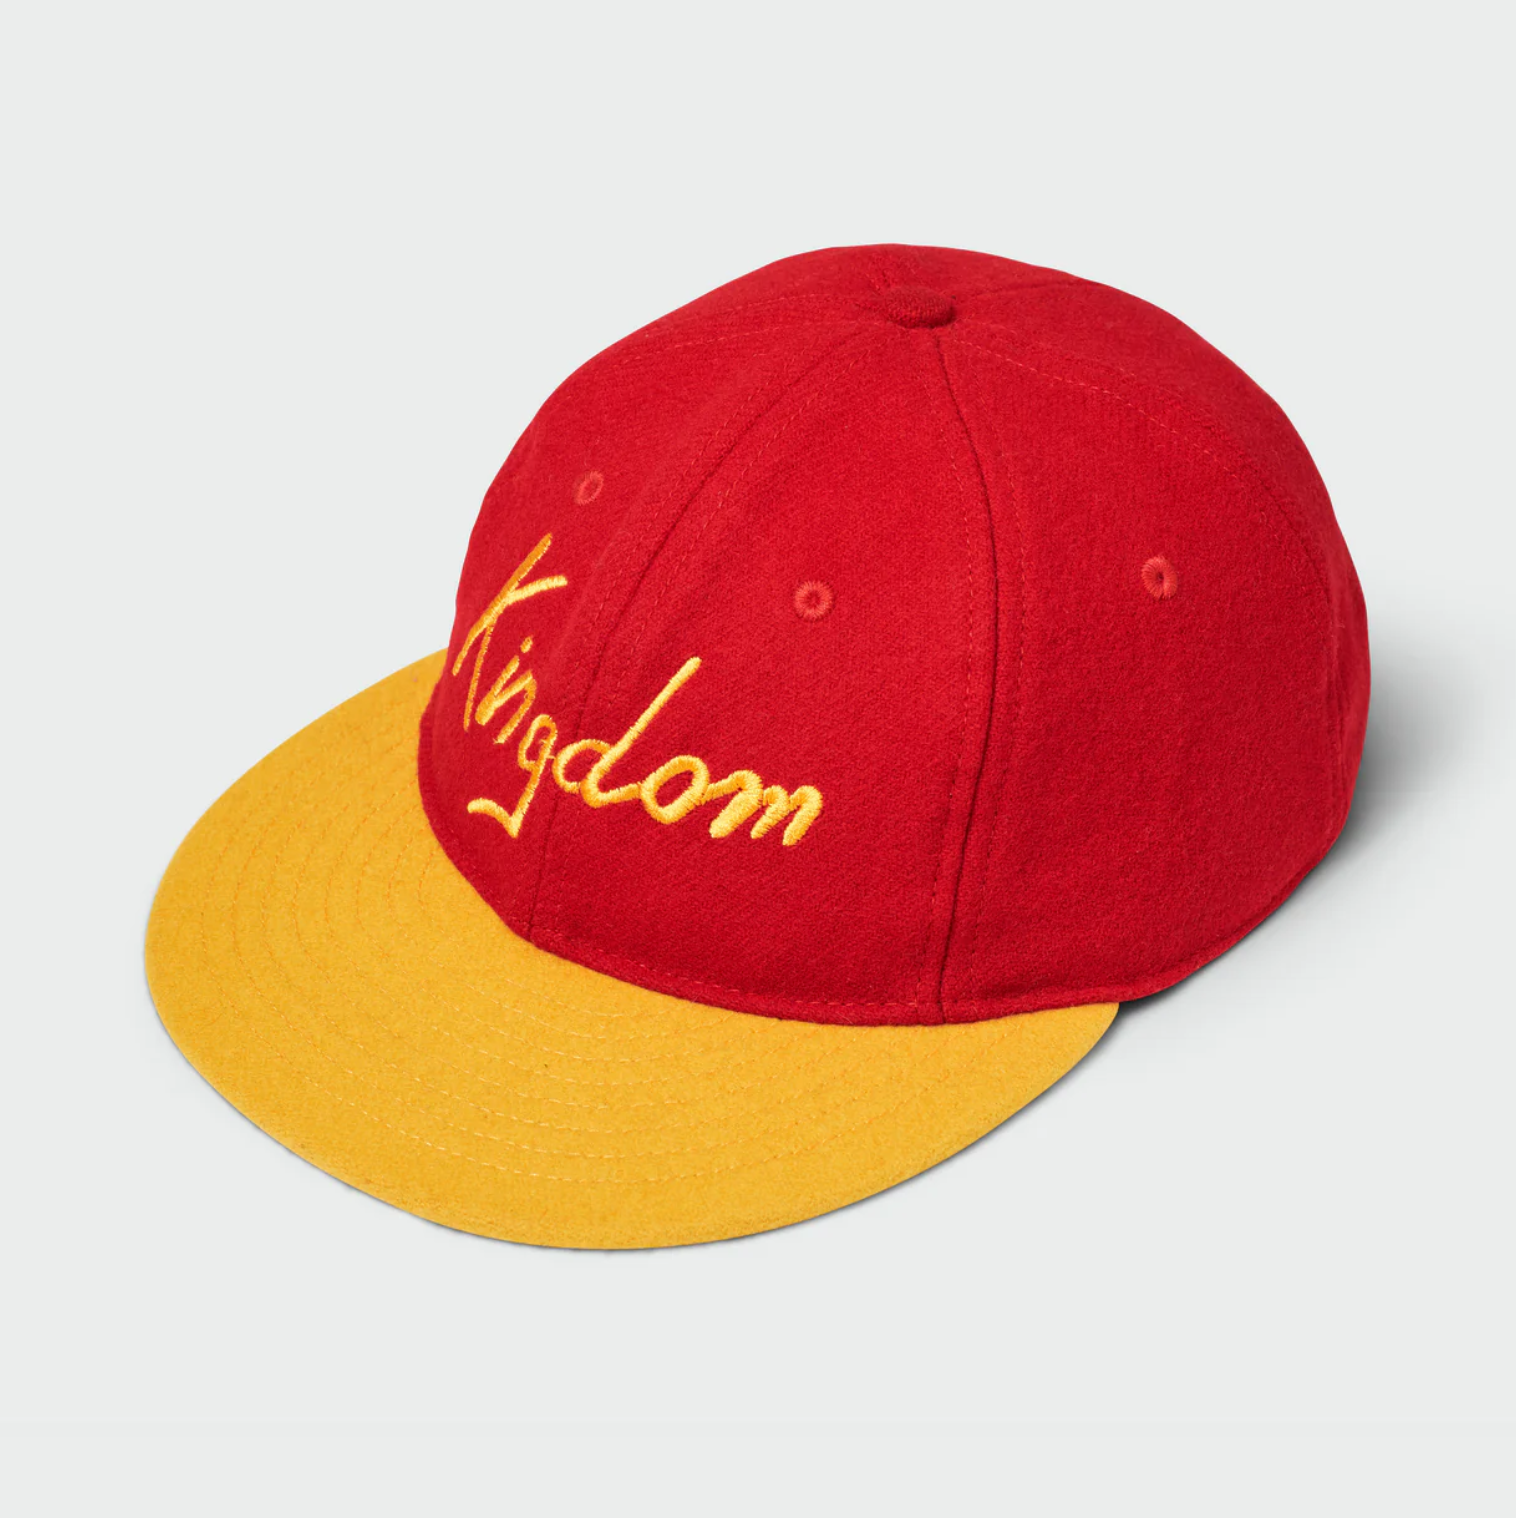 Sandlot - Kingdom Vintage Flatbill Hat - Red Wool w/ Gold Visor